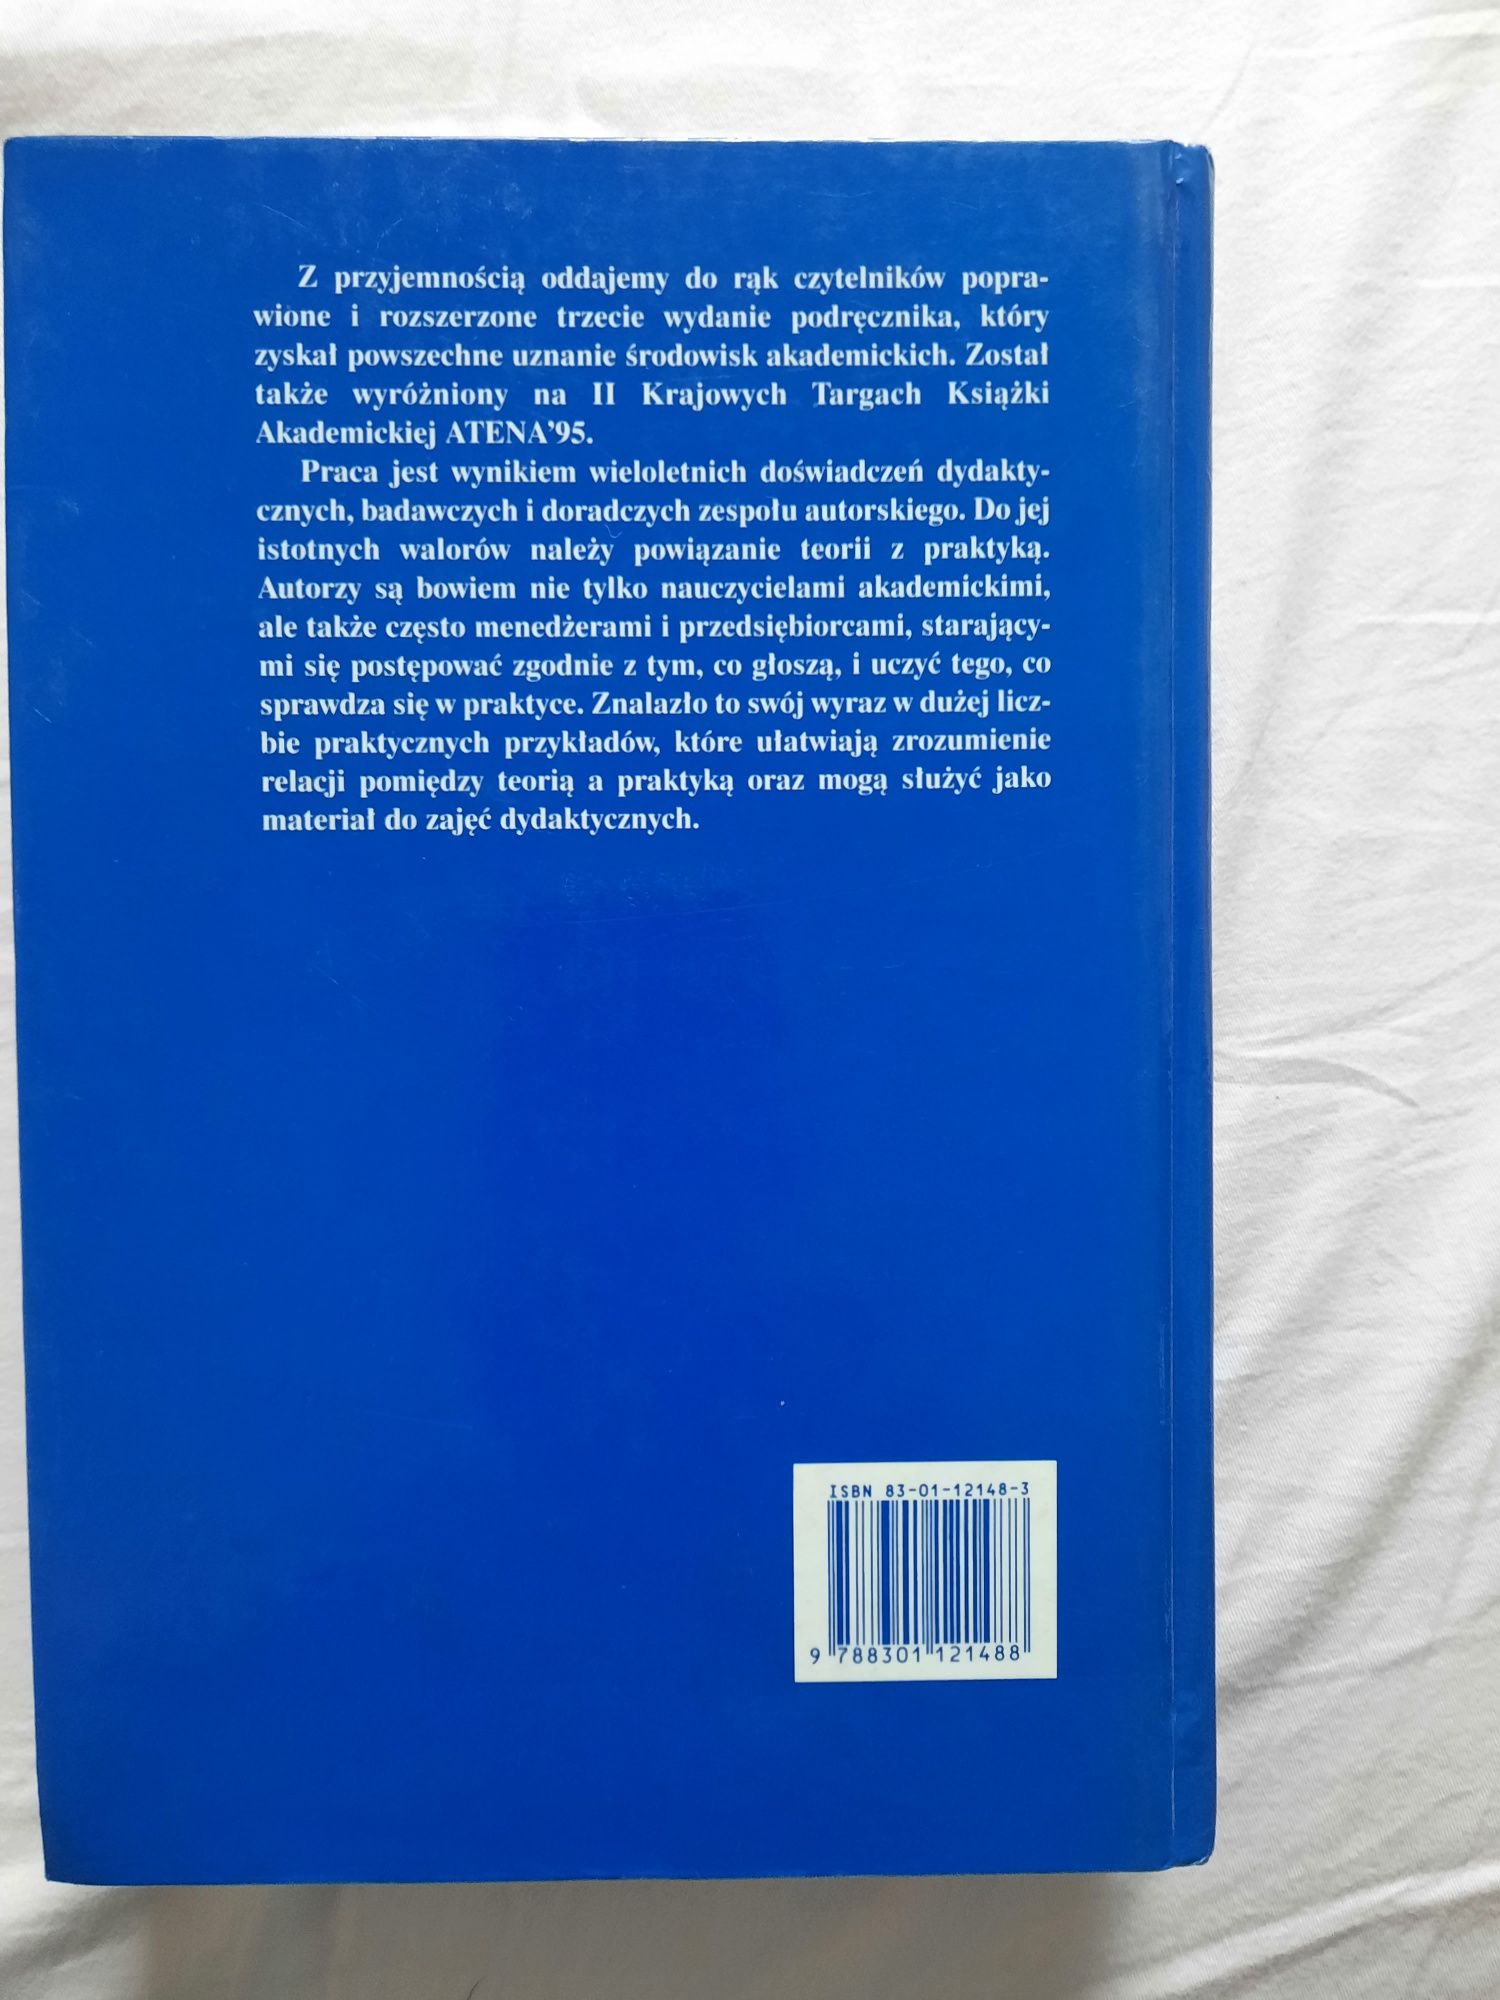 Podręcznik "Zarządzanie teoria i praktyka" PWN A. Koźmiński